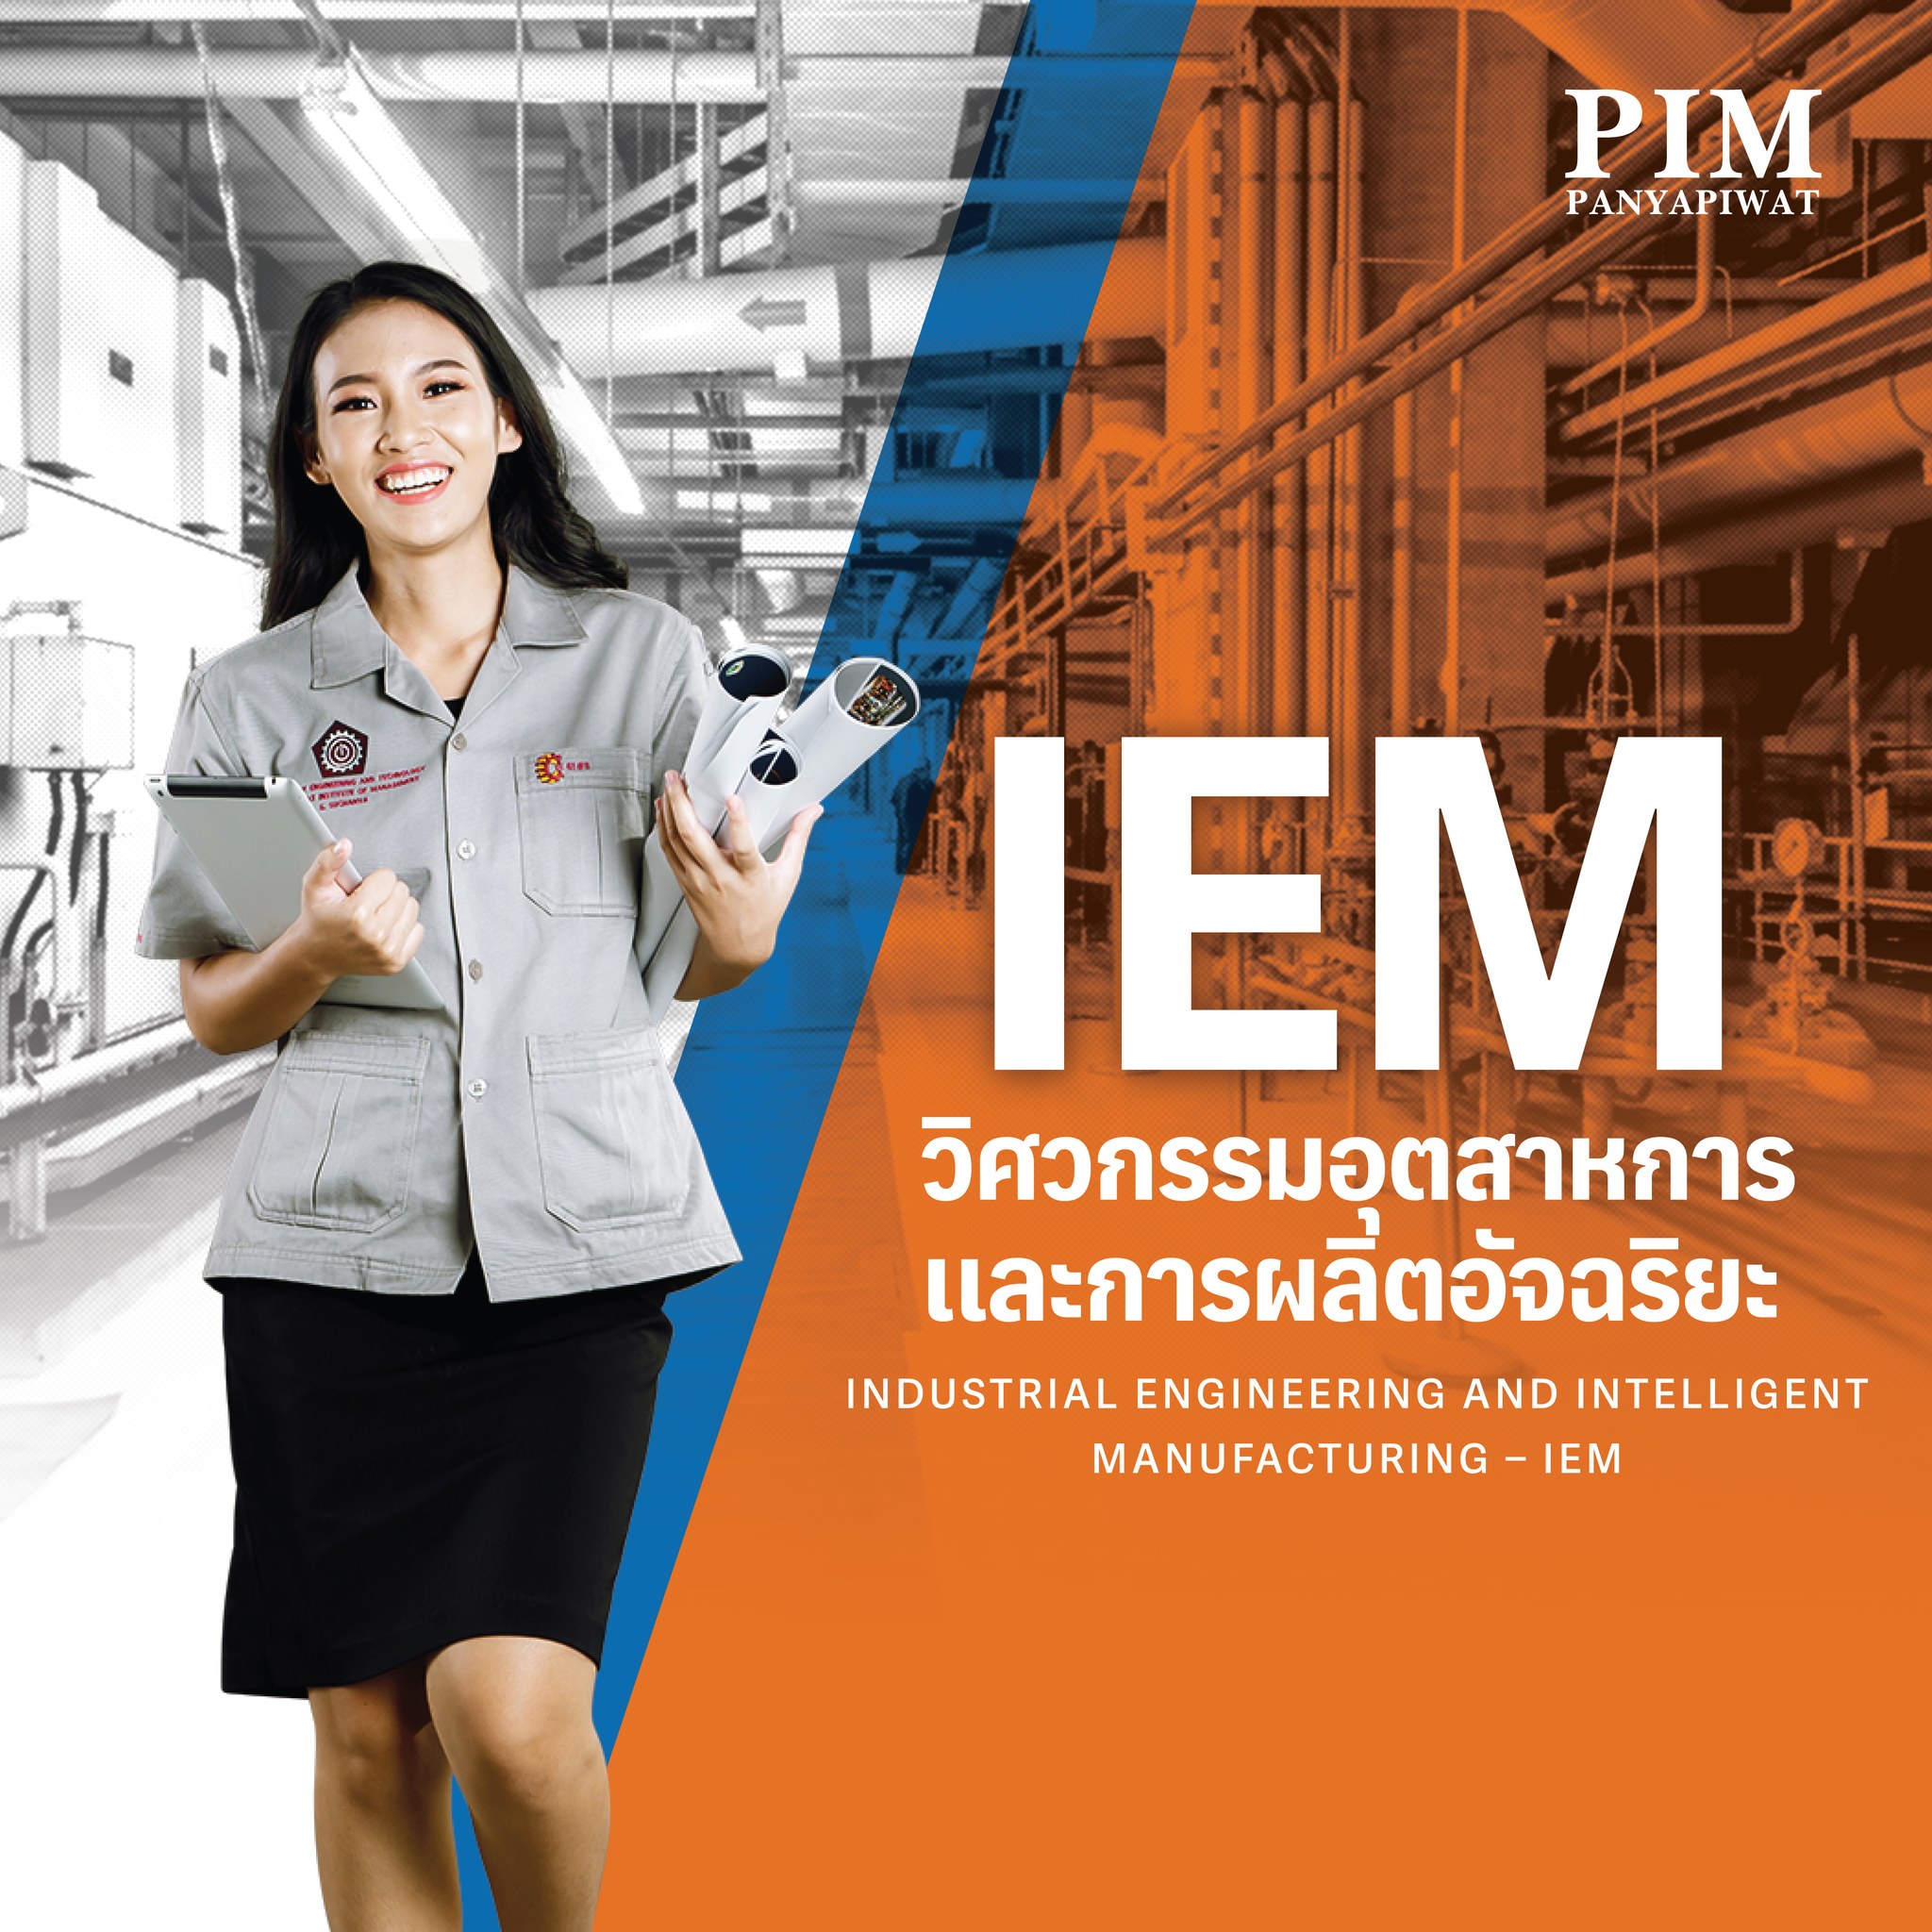 2. วิศวกรรมอุตสาหการและการผลิตอัจฉริยะ Industrial Engineering and Intelligent Manufacturing – IEM (วิศวกรรมศาสตรบัณฑิต เรียน 4 ปี)